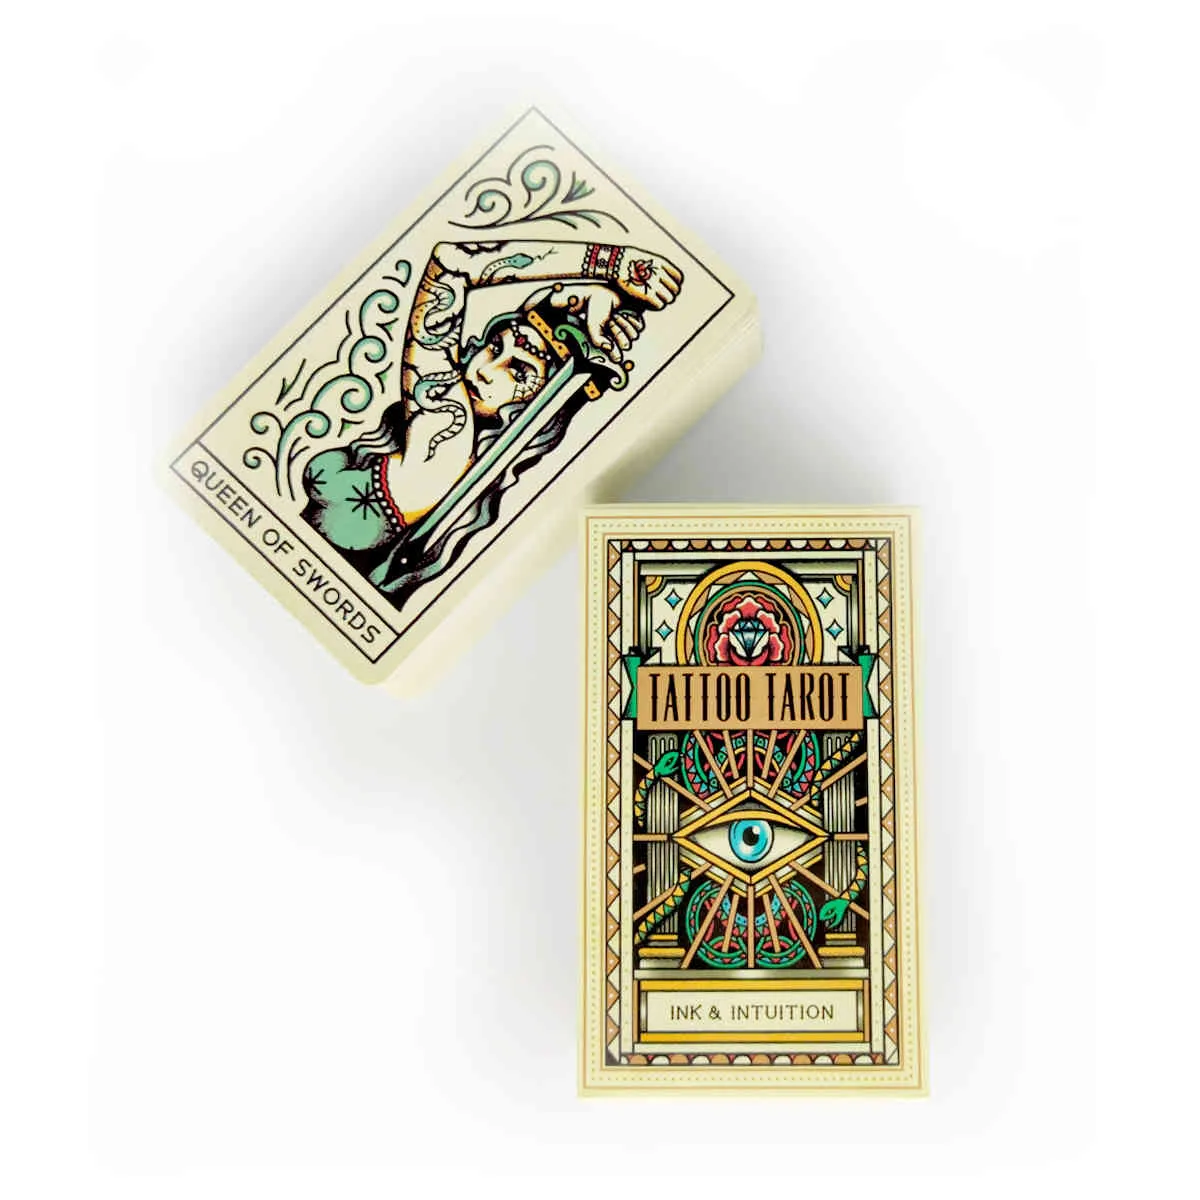 Tatouage Tarot Cartes Mystical Guidance Divination Entertainment Party Jeu de société Guide PDF Prend en charge la vente en gros 78 feuilles / boîte